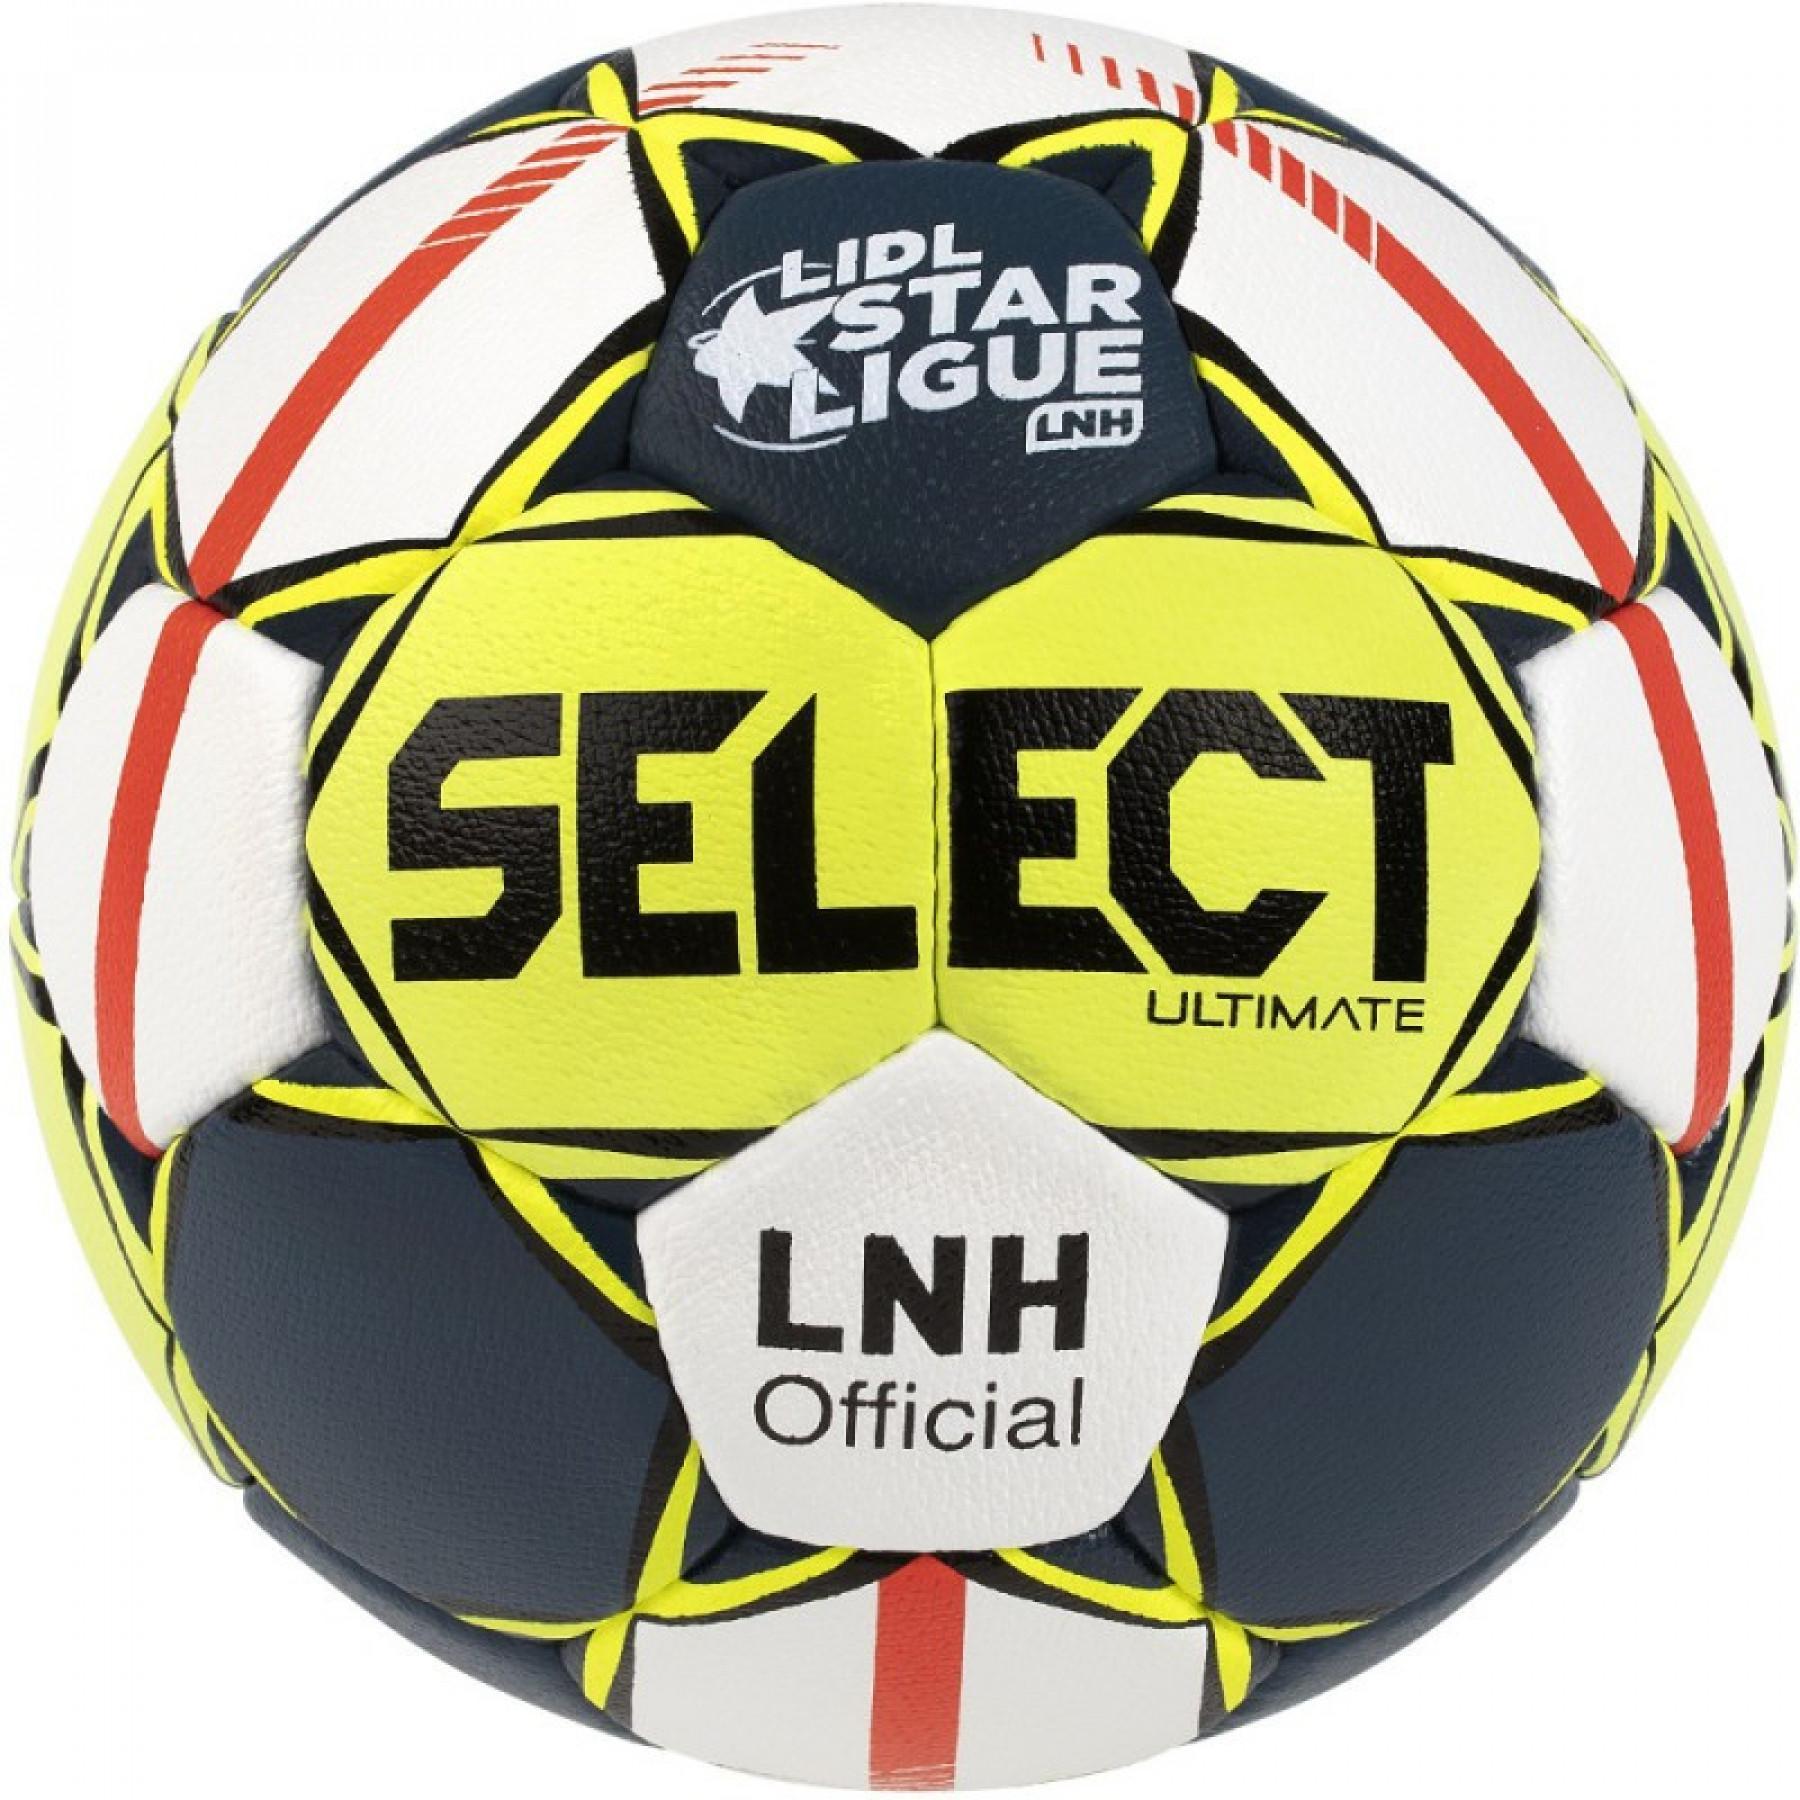 Paquete de 10 globos Select Replica LNH 19/20